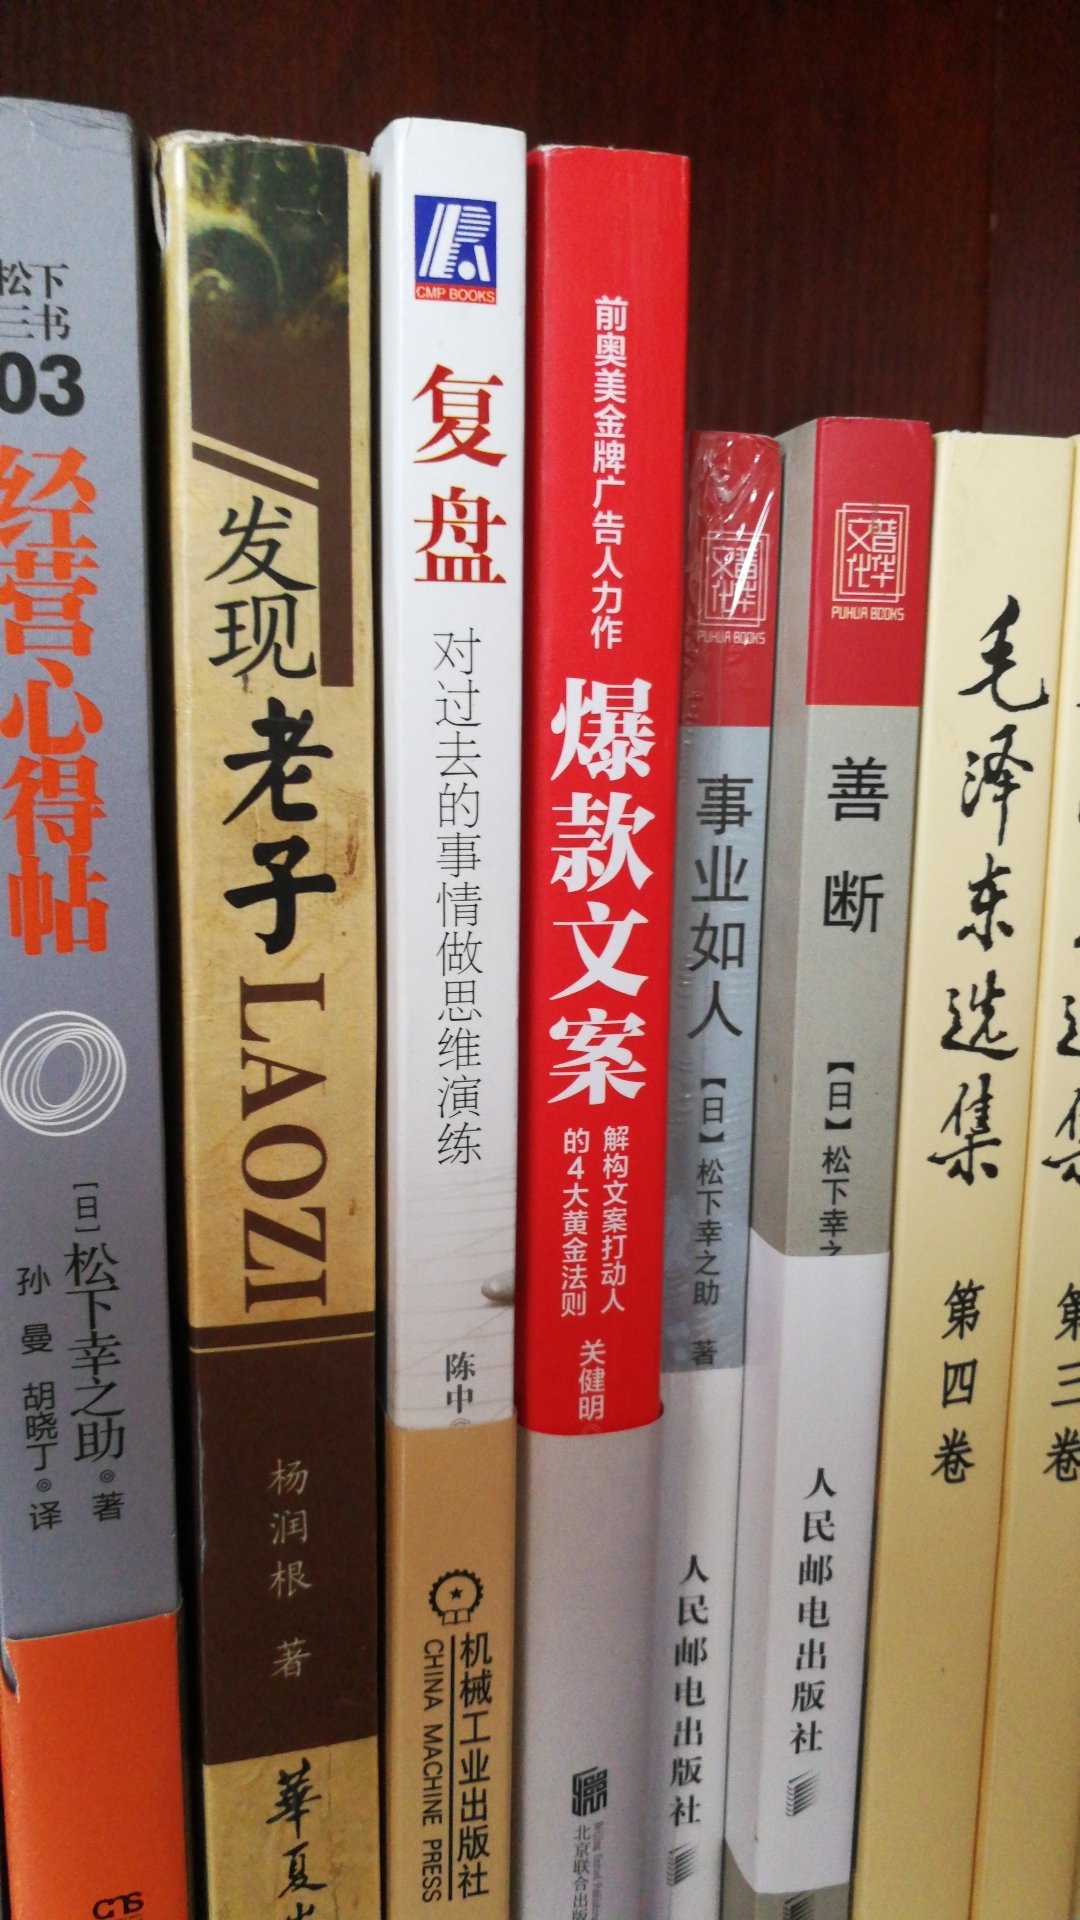 日本人写的书比较容易看懂，东方文化，思考方式相近，很不错的书，深入浅出。